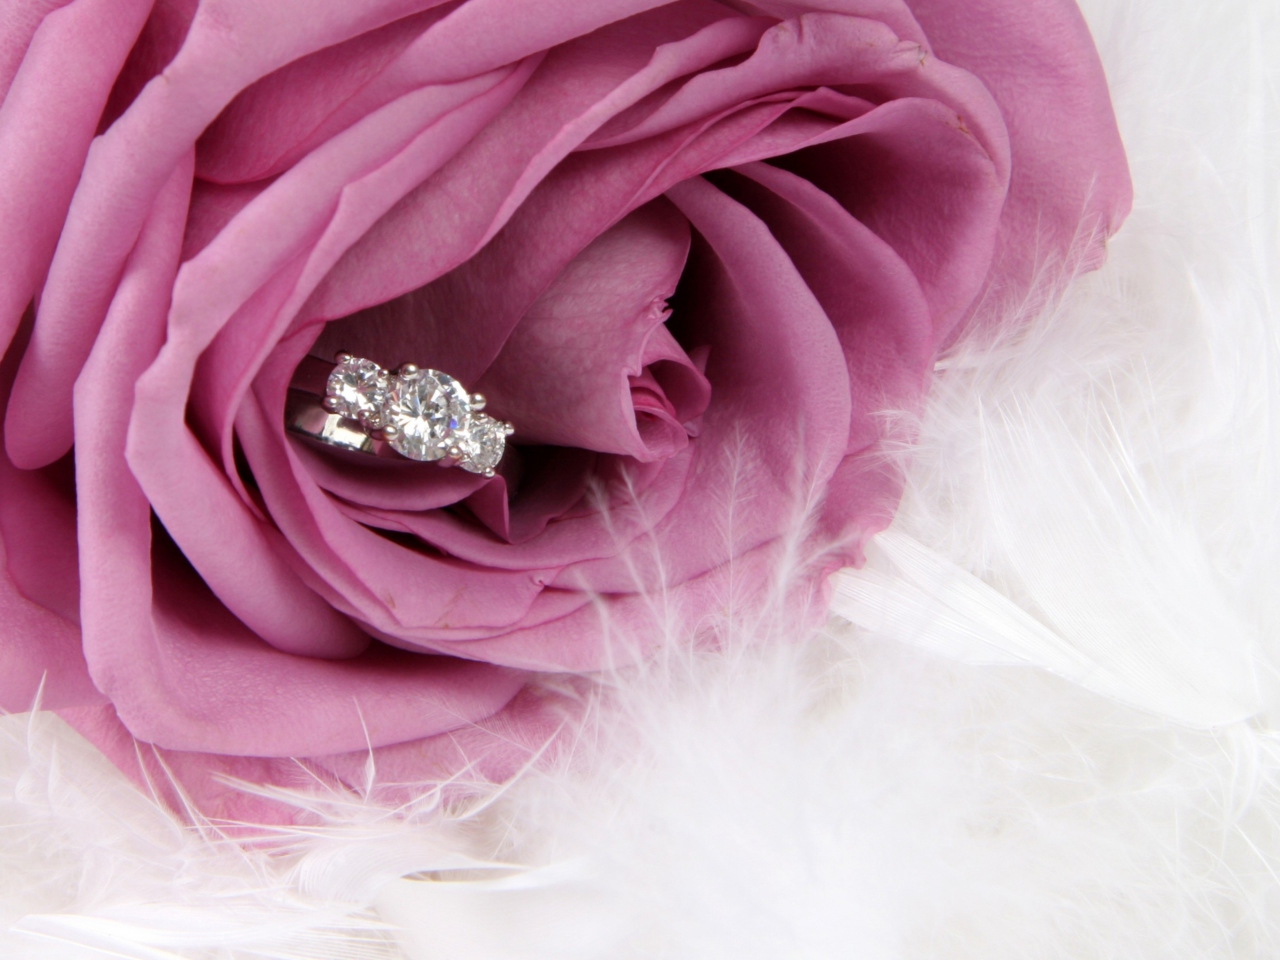 Engagement Ring In Pink Rose screenshot #1 1280x960